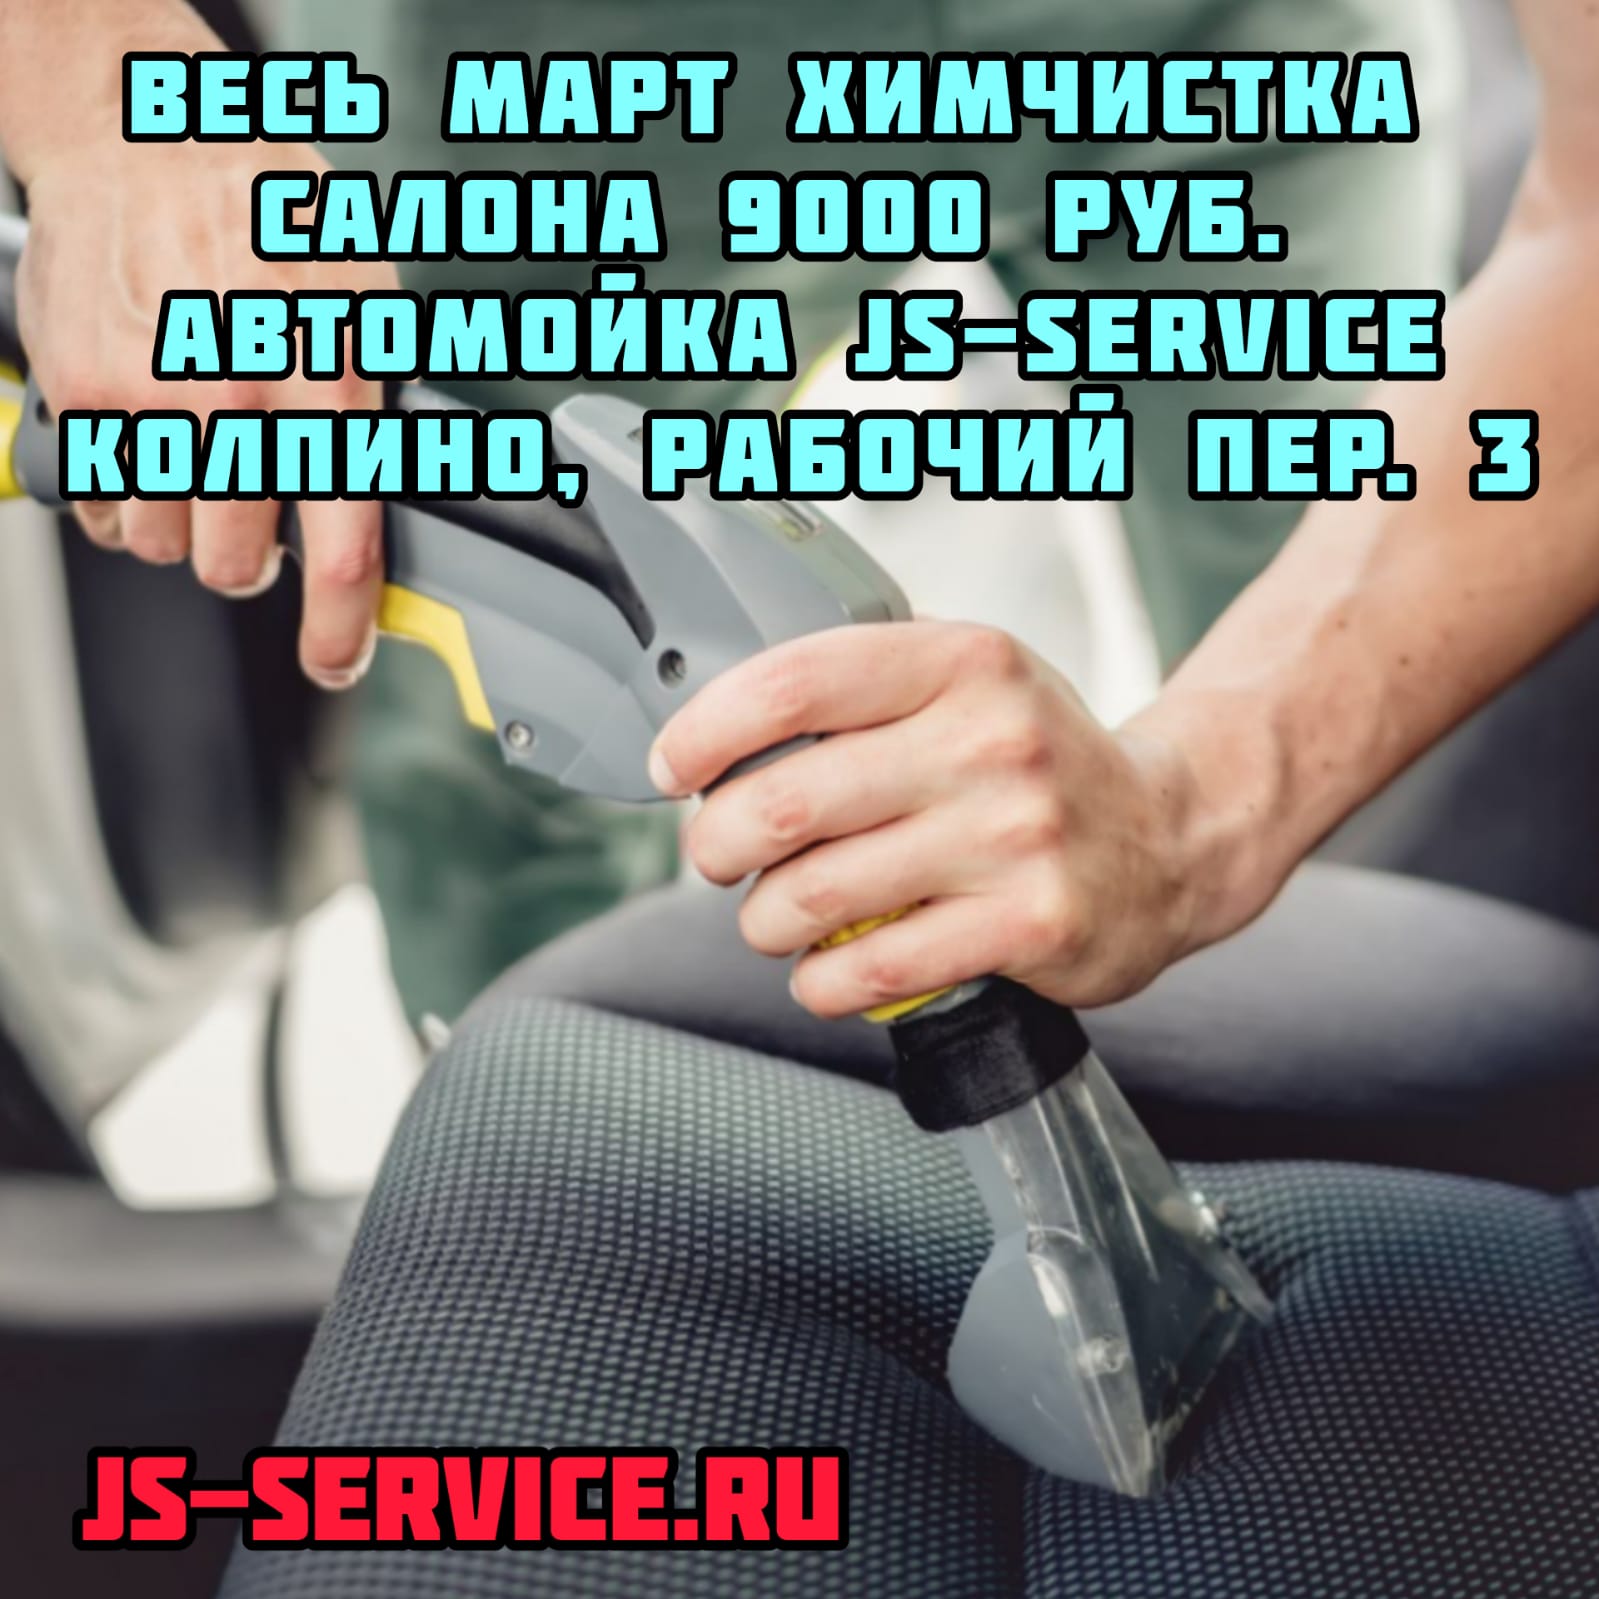 Весь март химчистка салона 9000 рублей автомойка в Колпино рабочий пер 3 JS-Service